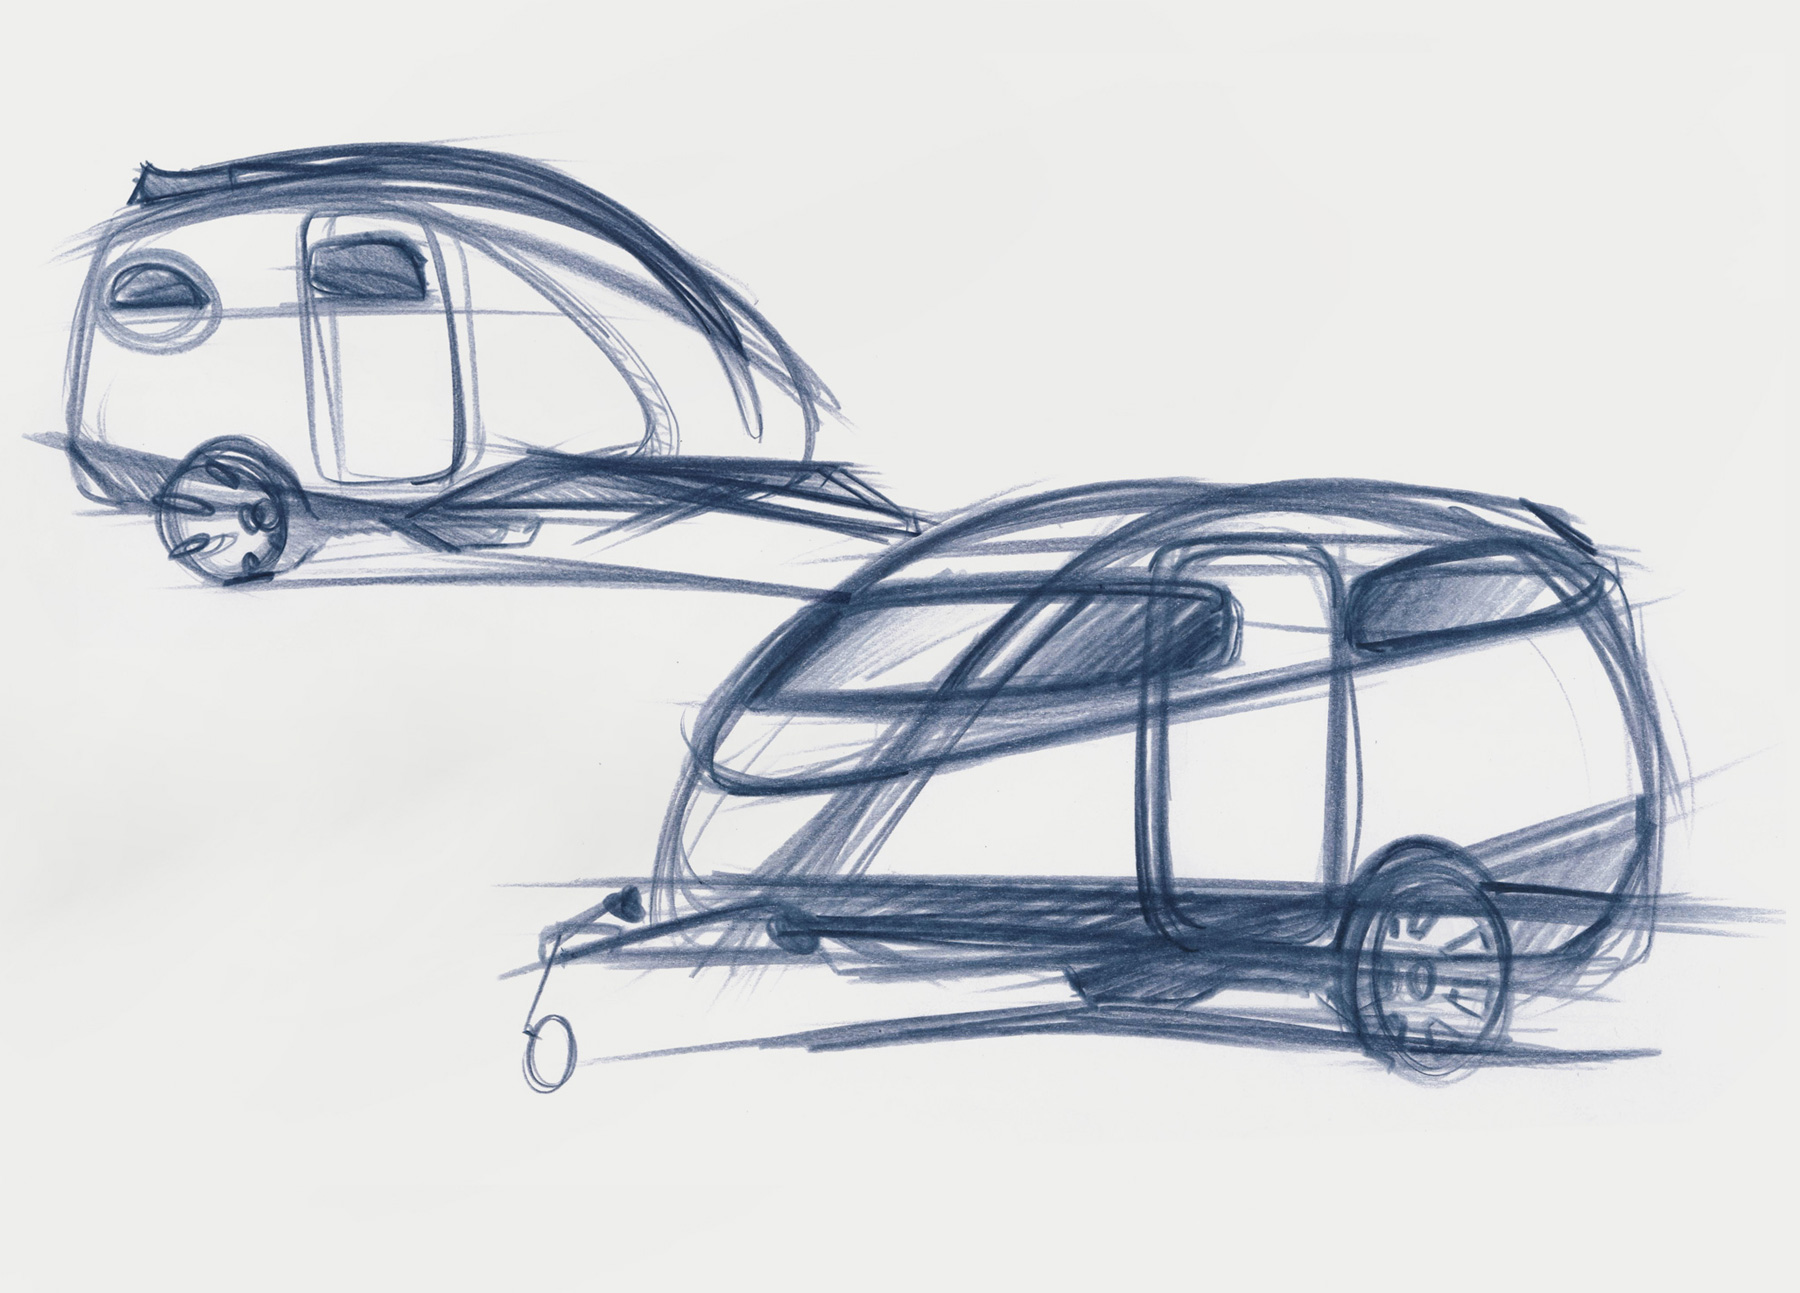 Skizzen aus der Entwurfsphase zu einem kompakten, leichten Caravan